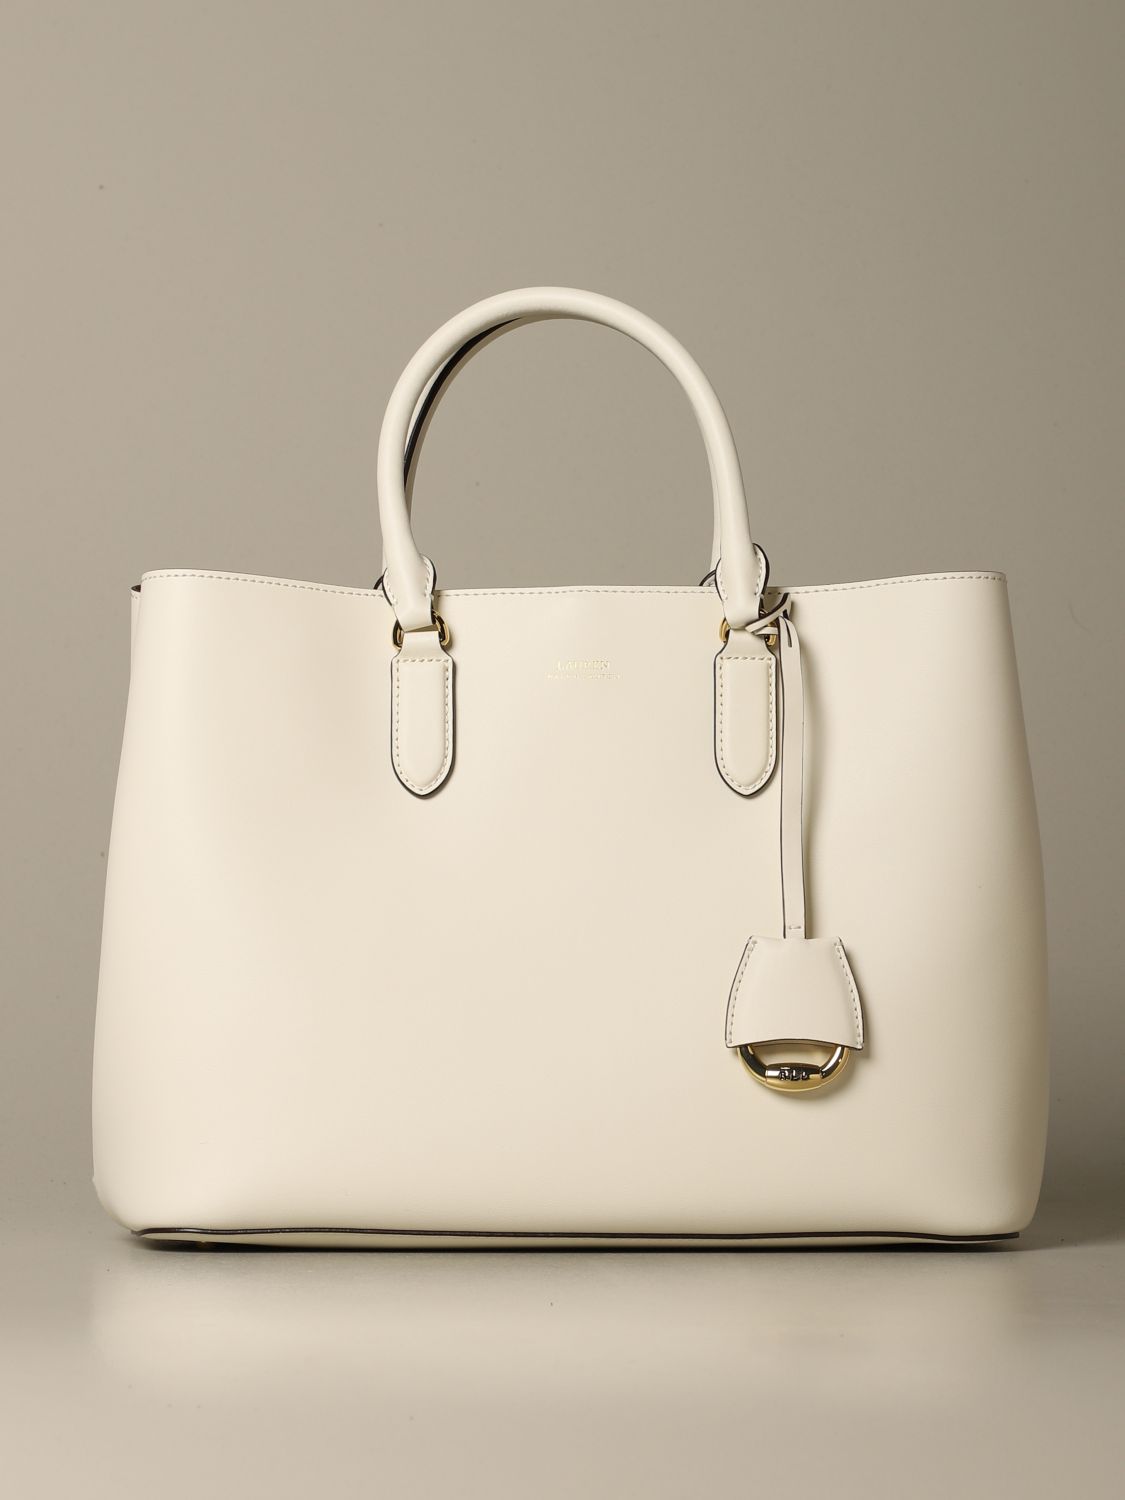 Lauren Ralph Lauren Outlet: handbag for women - Leather  Lauren Ralph  Lauren handbag 431697680 online on